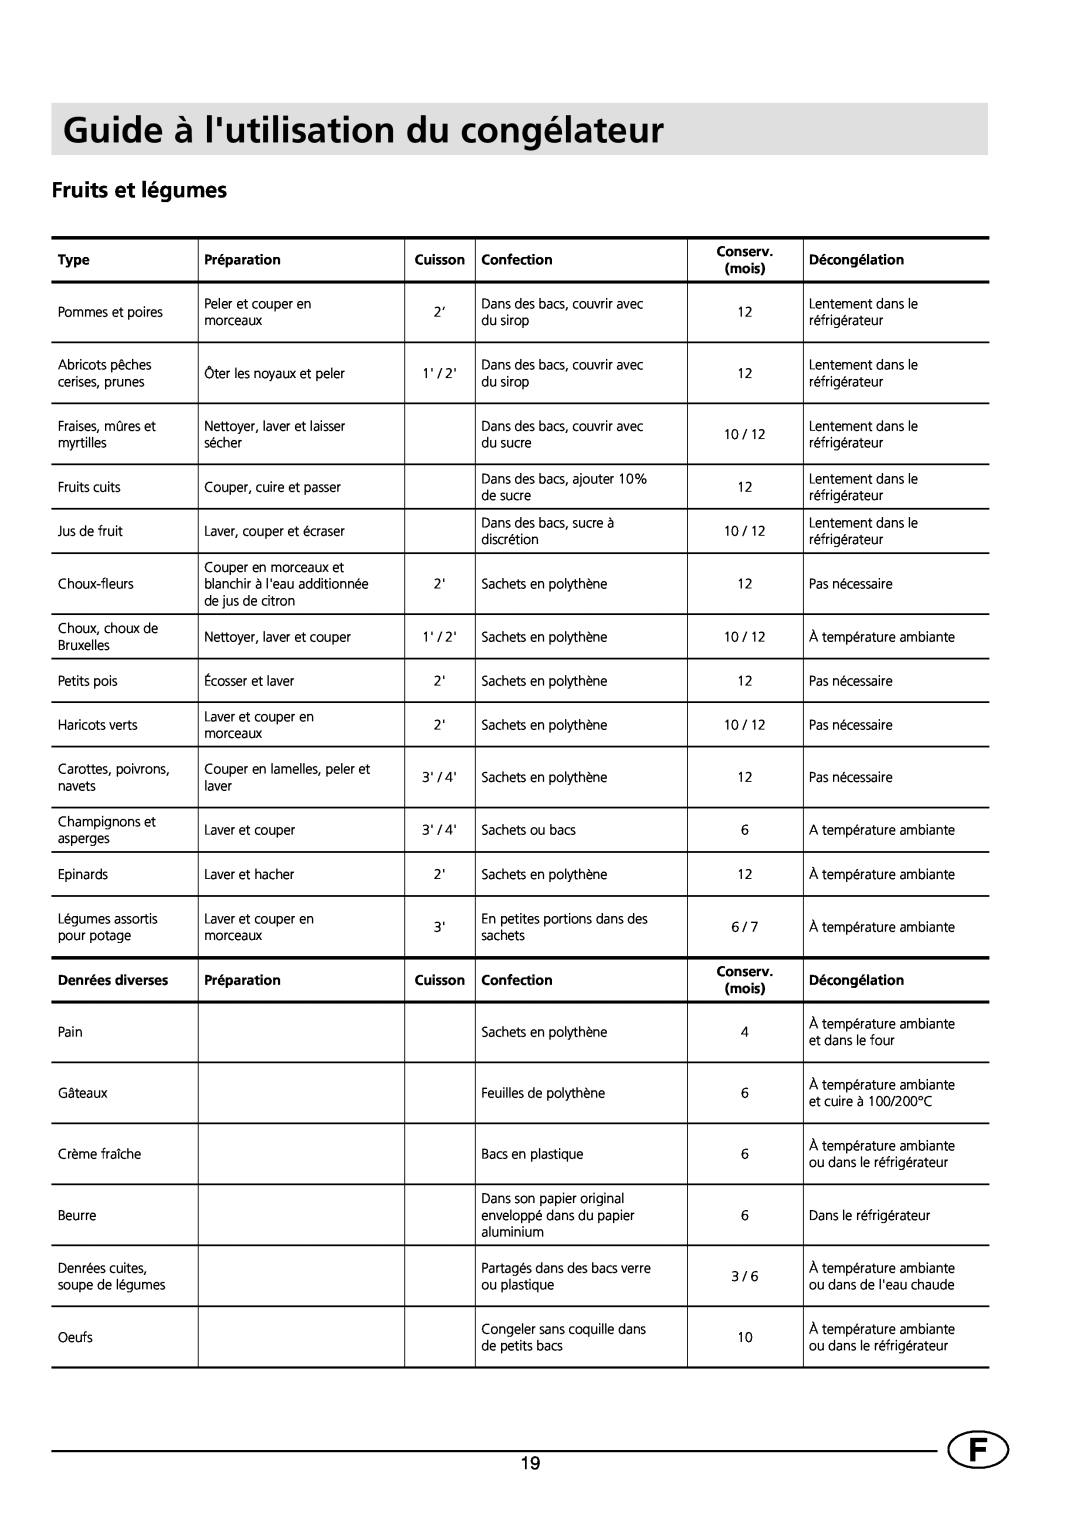 Smeg VR120B manual Guide à lutilisation du congélateur, Fruits et légumes, Conserv 